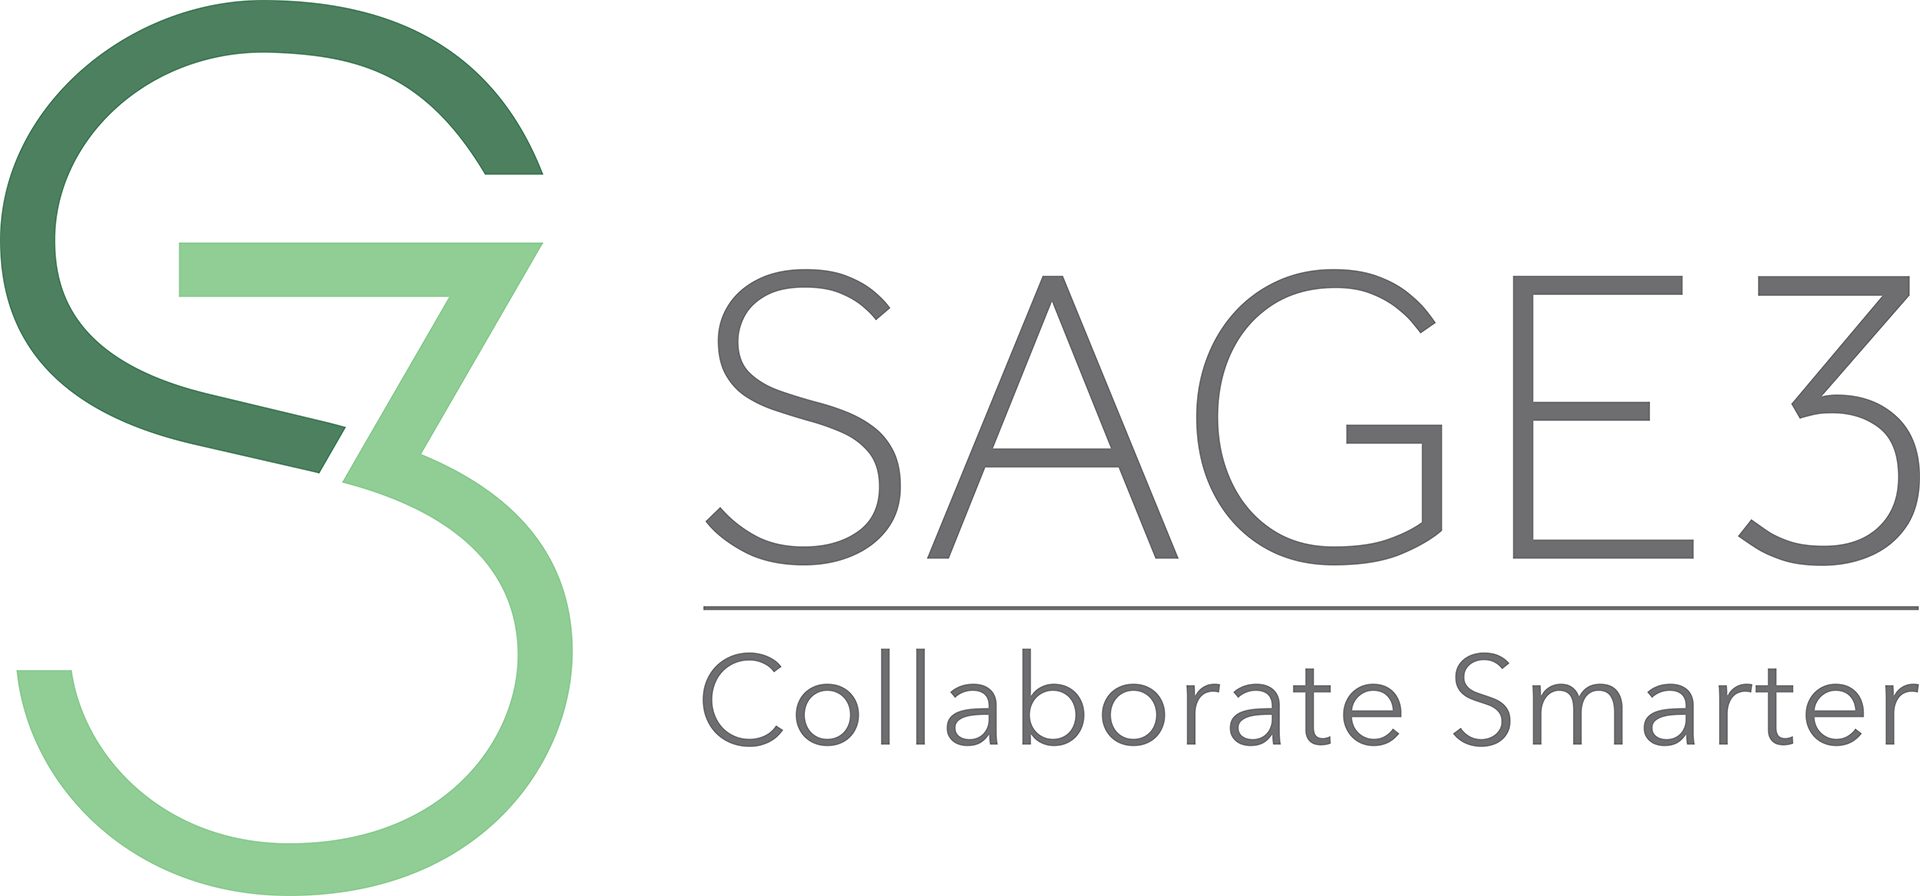 An image named sage-s3-logo-2.png